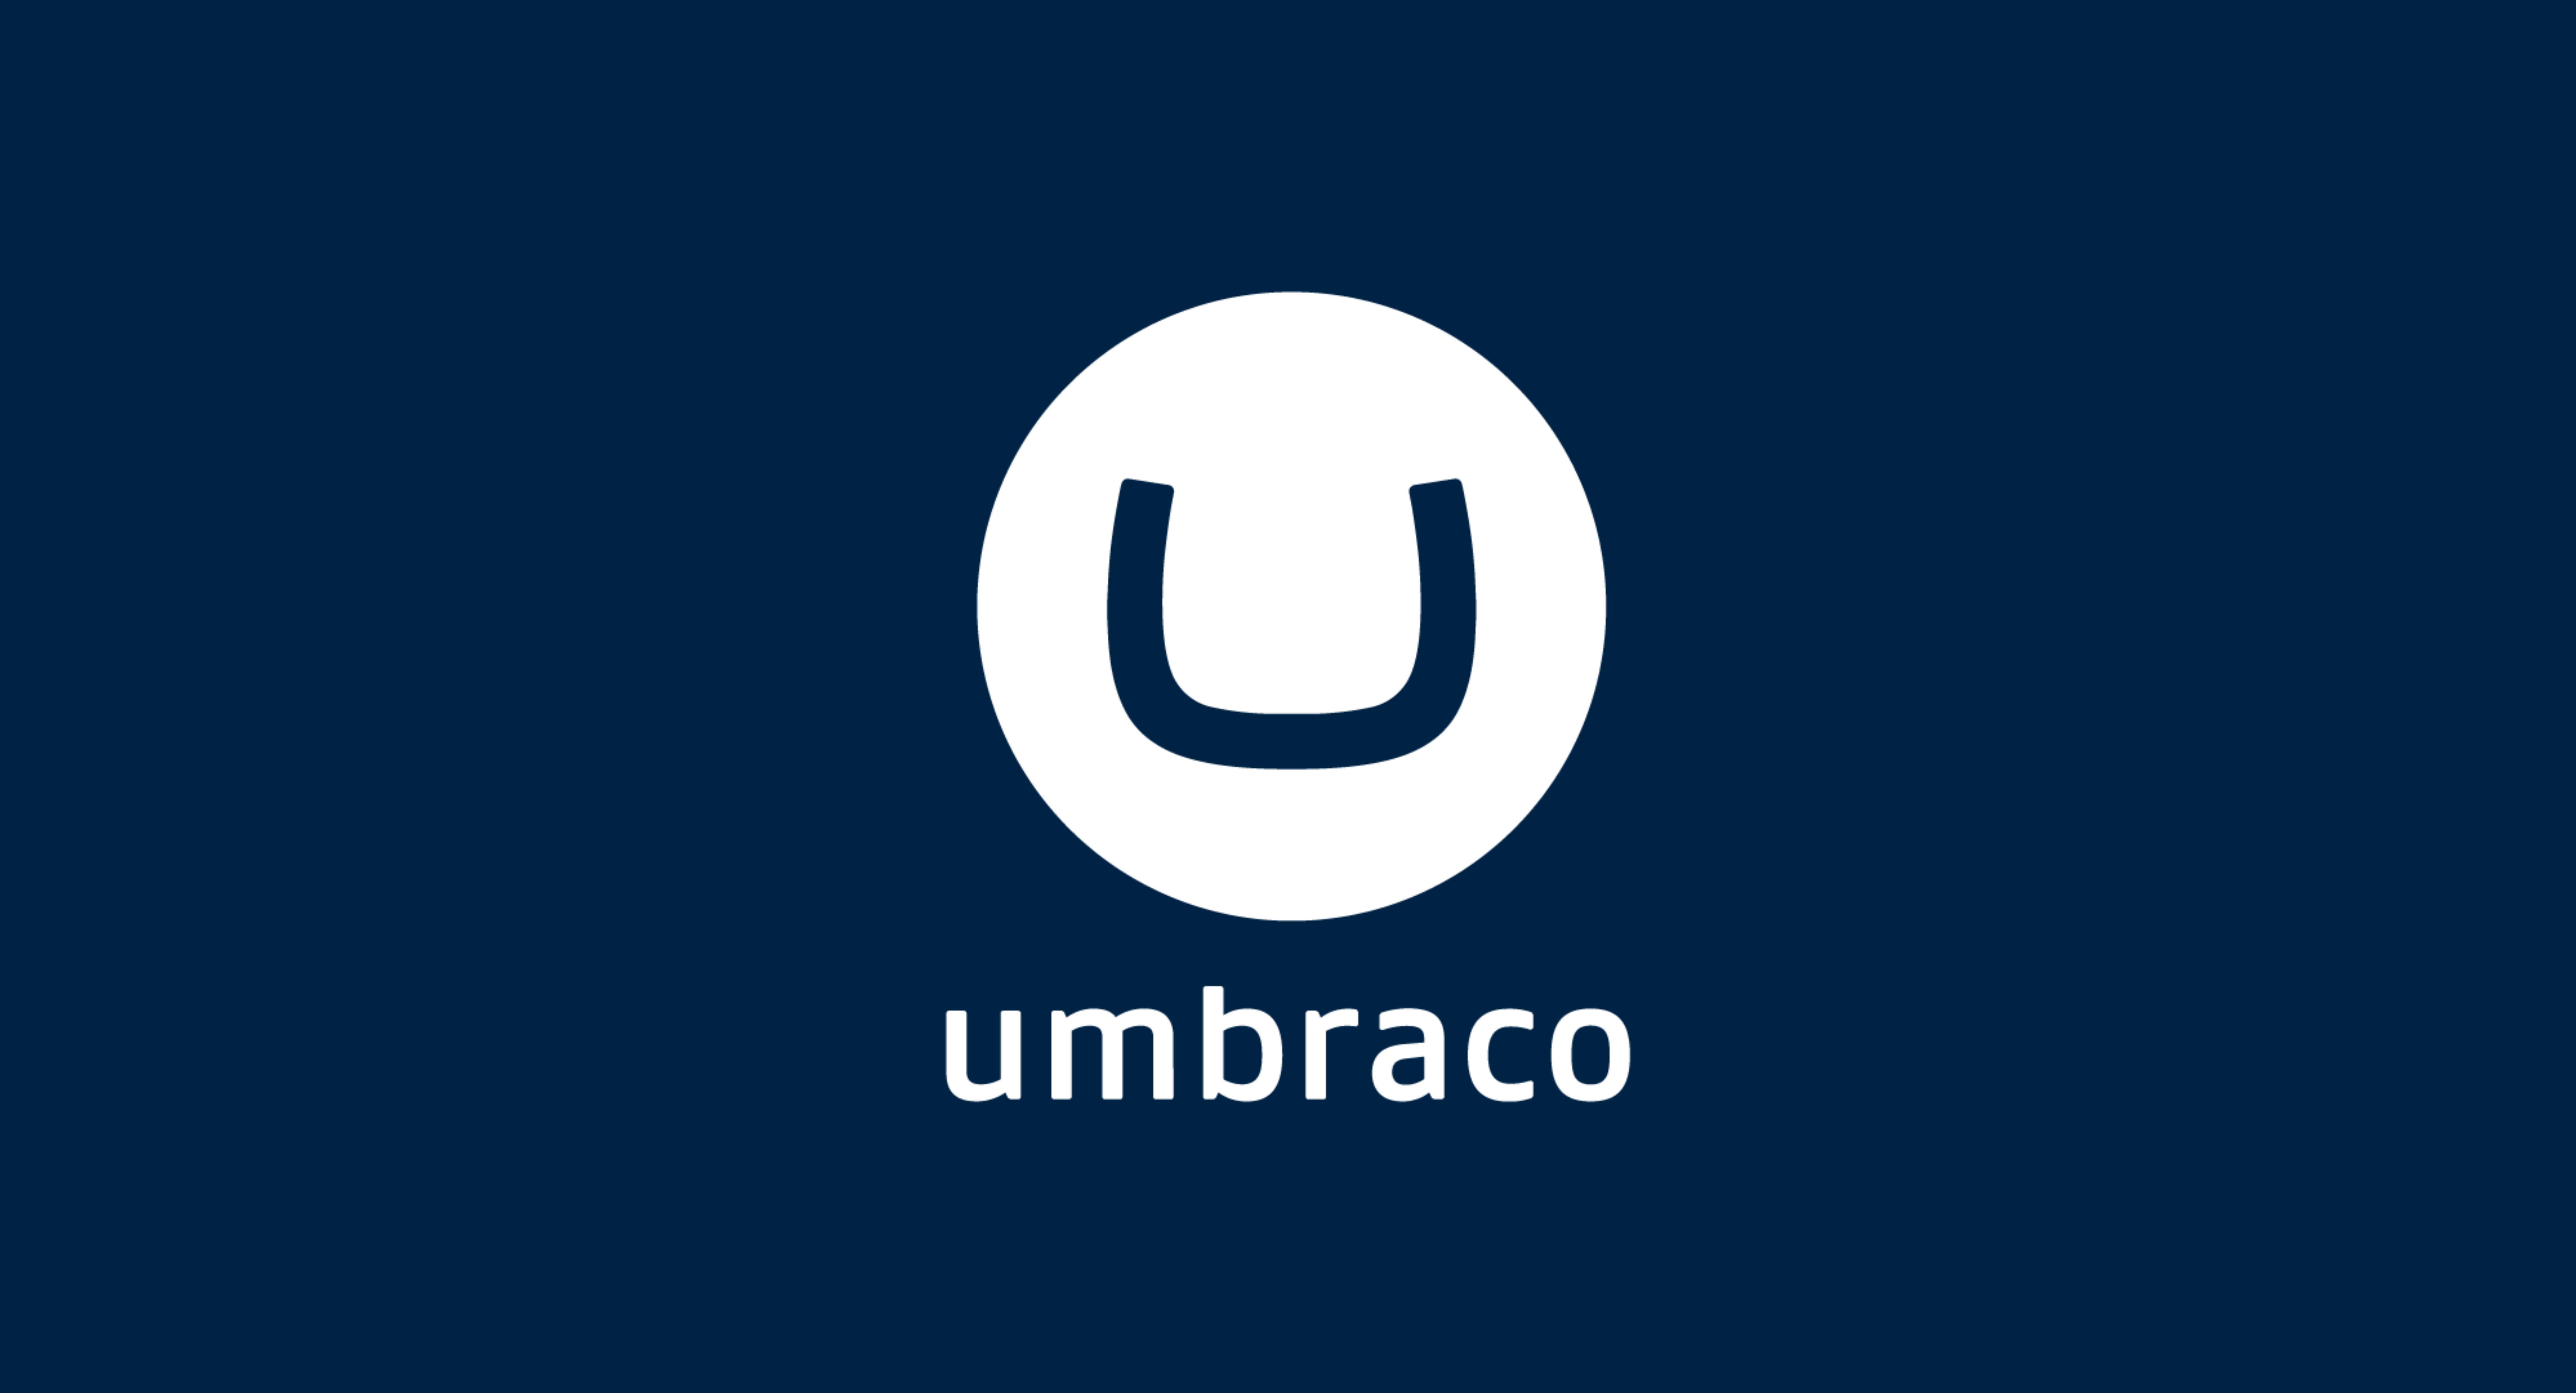 Umbraco 使用 G2 解决方案将平均交易价值提高 30%